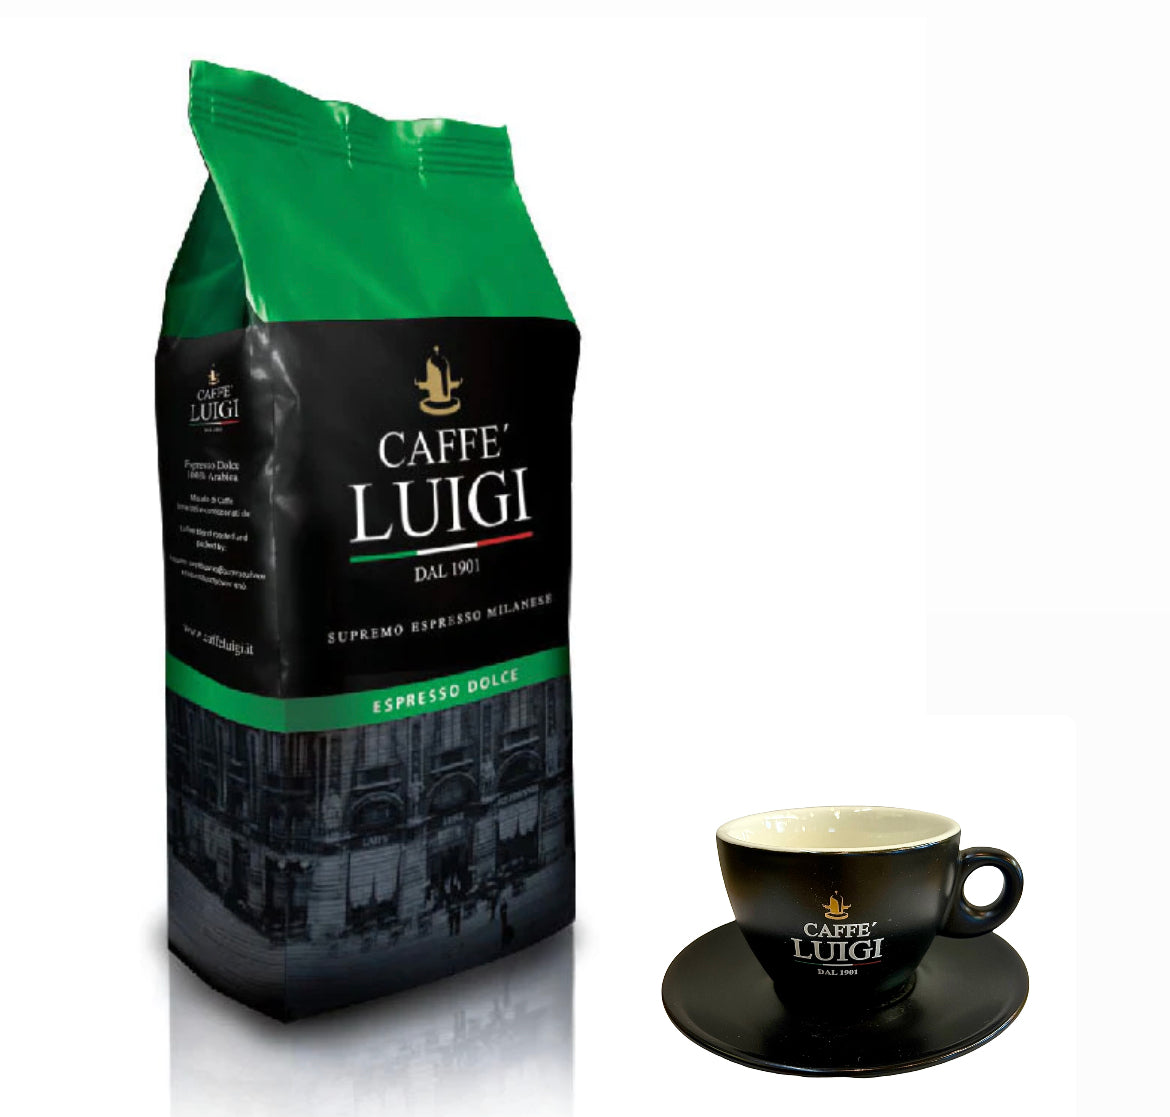 Espresso DOLCE Bohnen Beans 1Kg Caffe 'Luigi 100% Arabica + 1 Cappuccino Tasse Klein